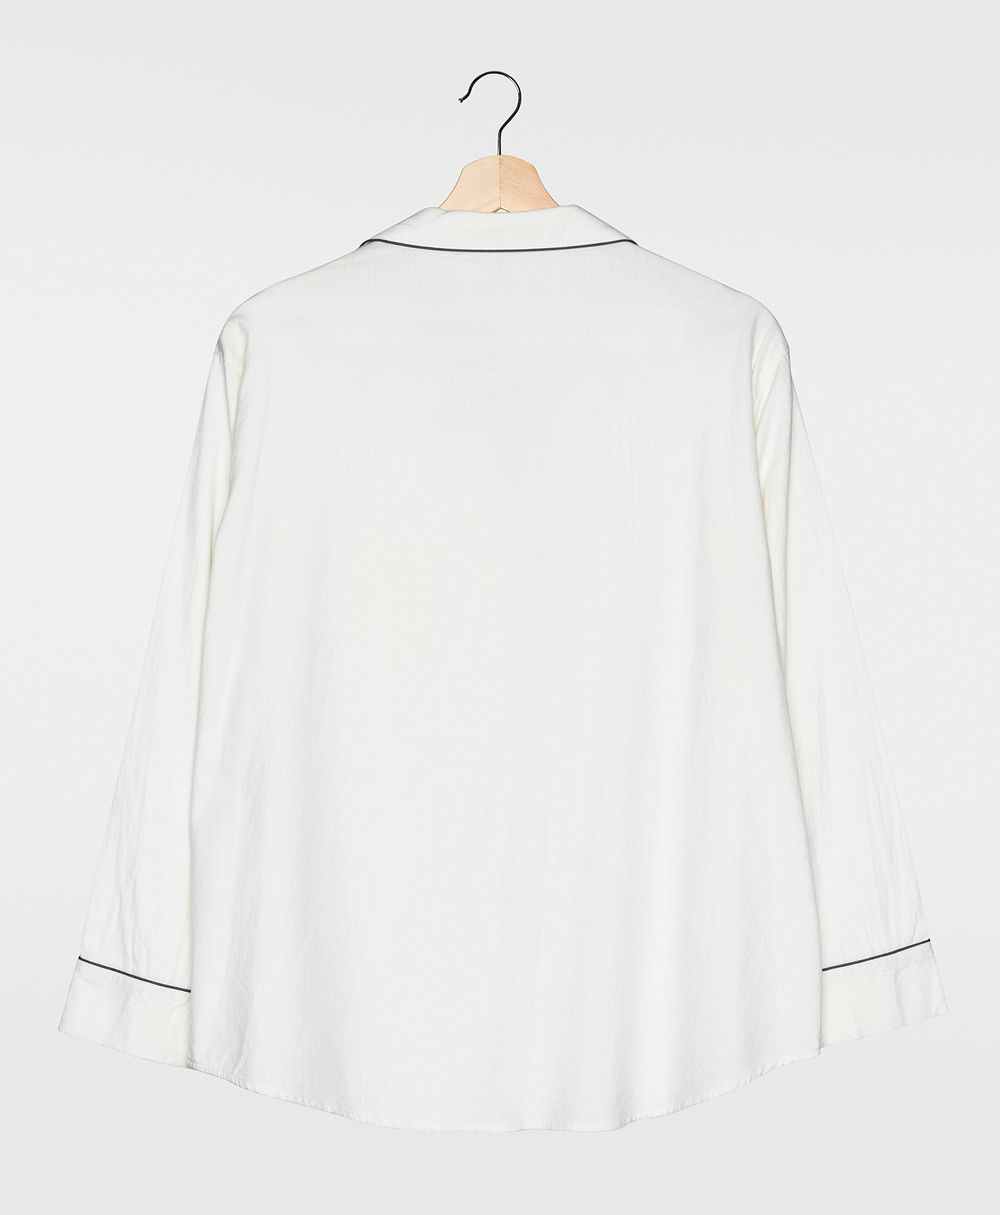 White pajama shirt mockup psd rear view simple nightwear apparel